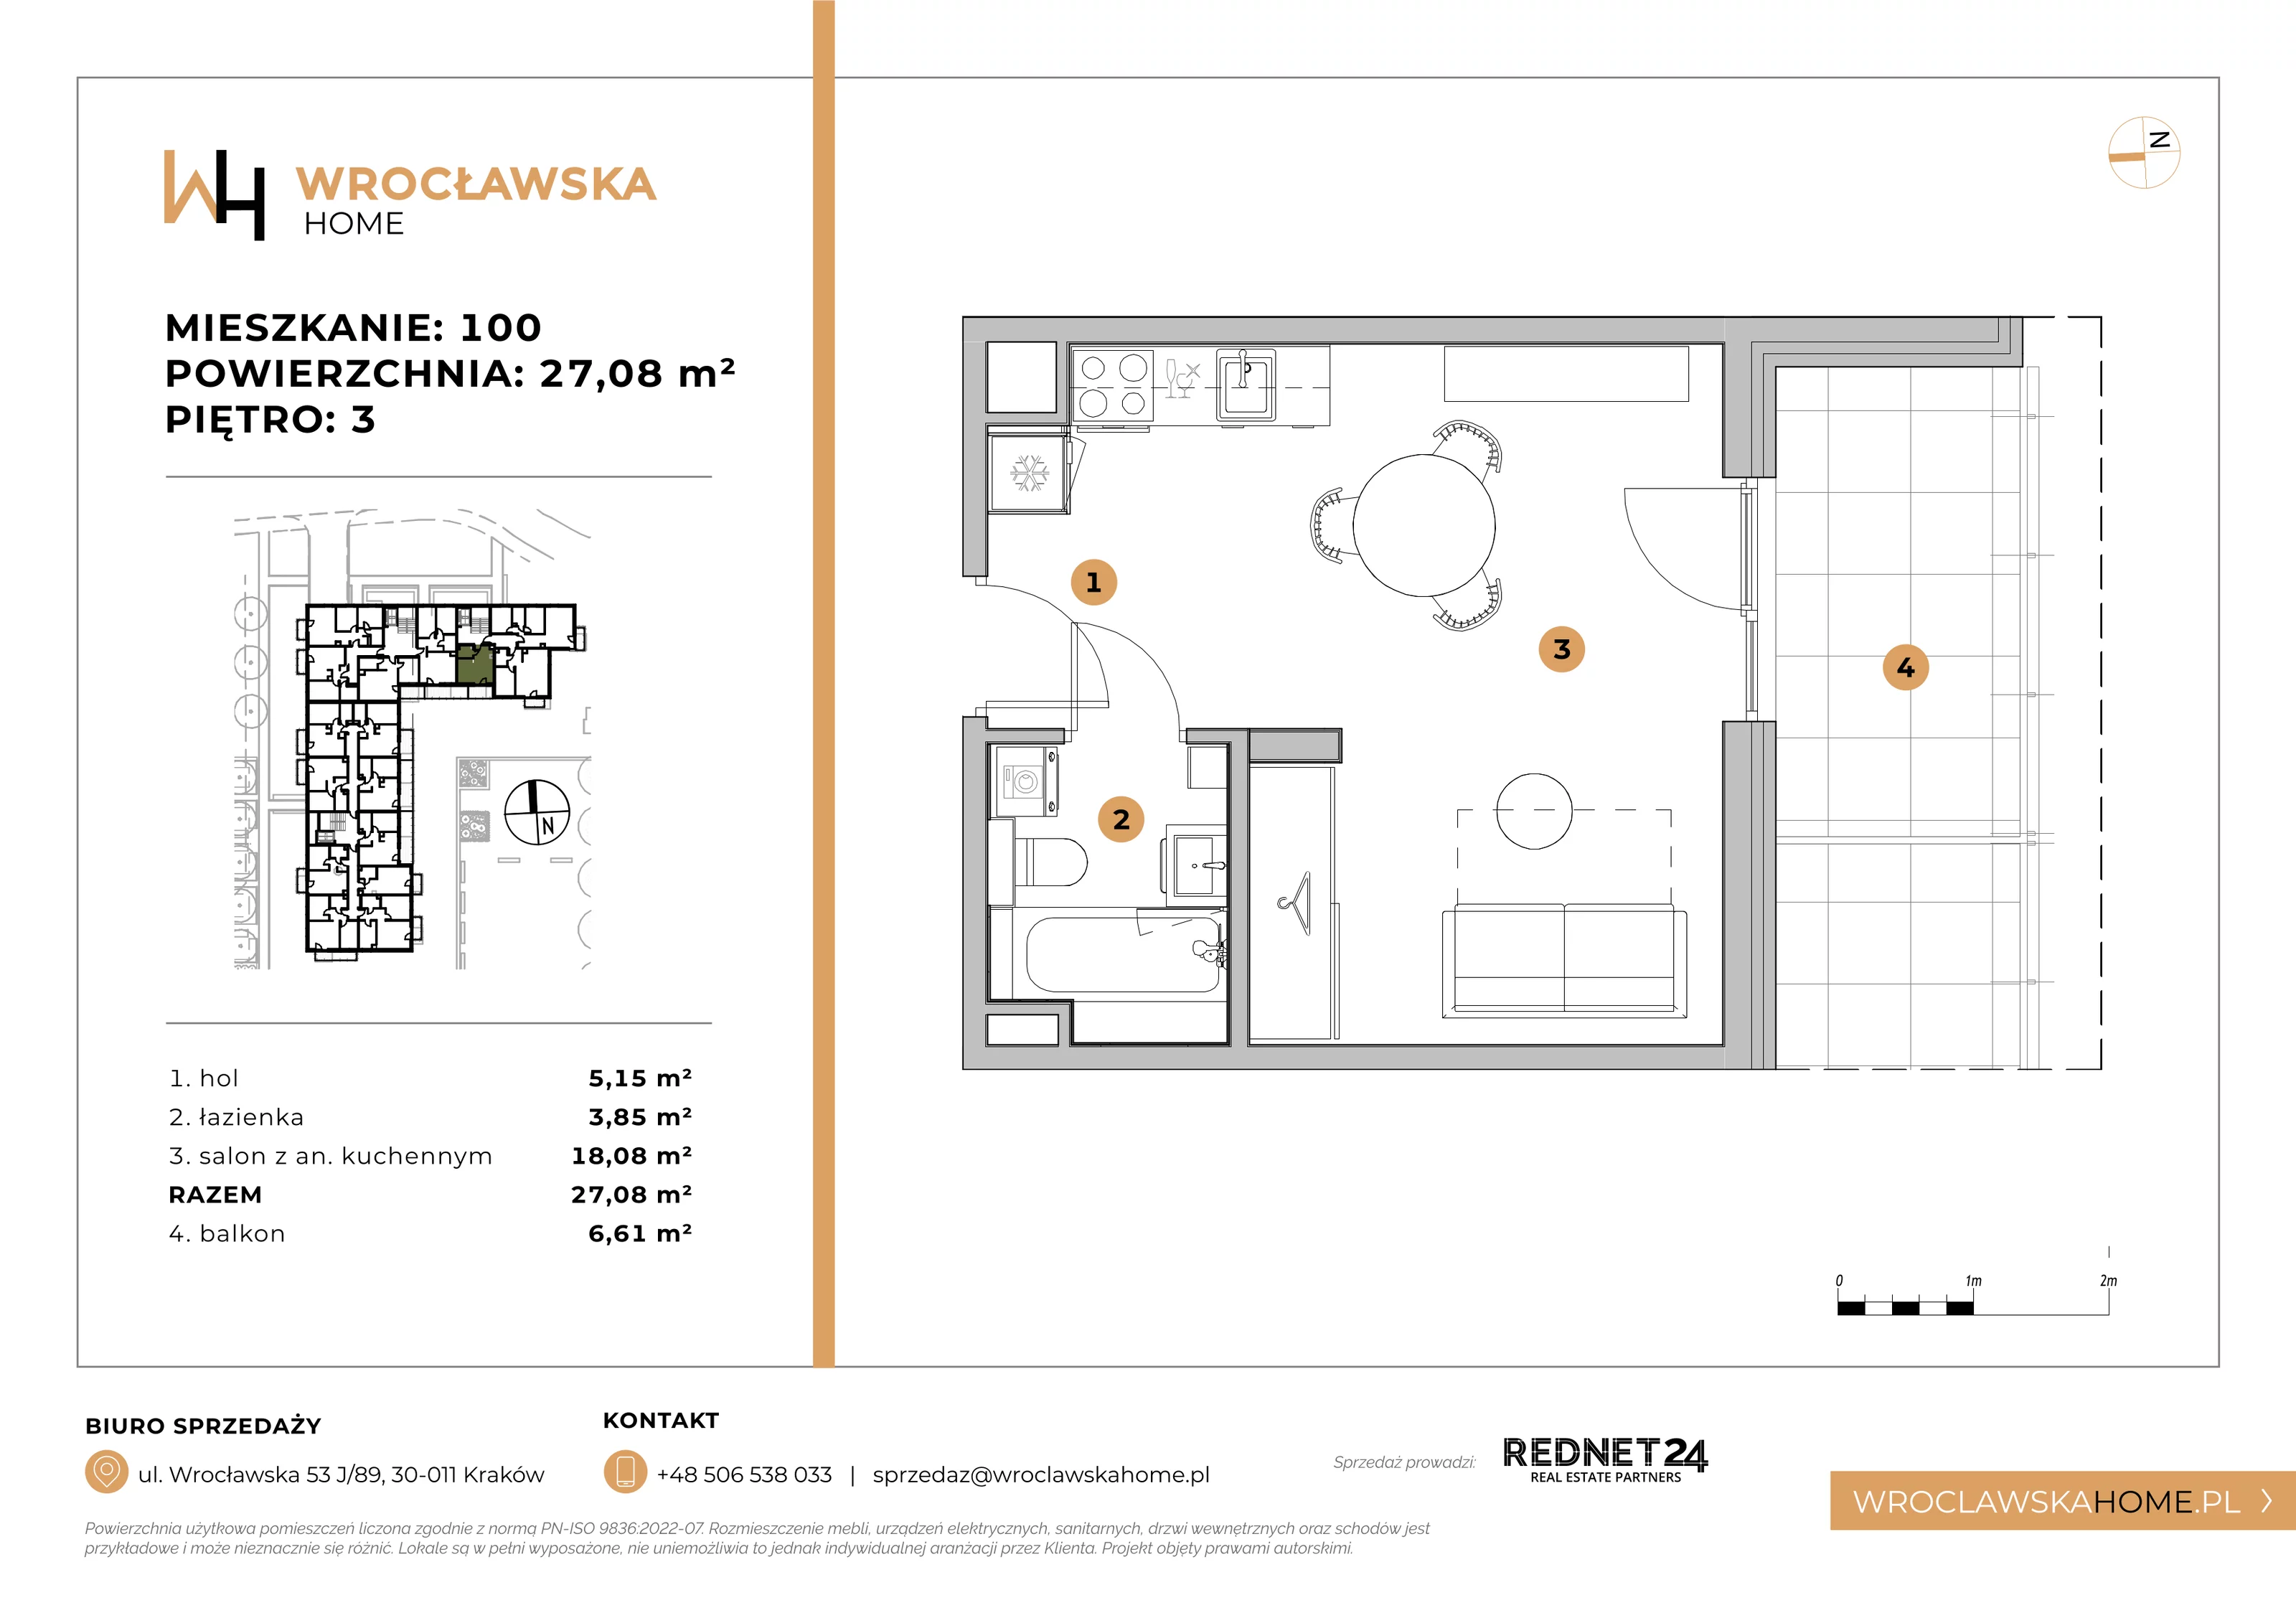 Mieszkanie 27,08 m², piętro 3, oferta nr 100, Wrocławska HOME, Kraków, Krowodrza, ul. Wrocławska 53J	